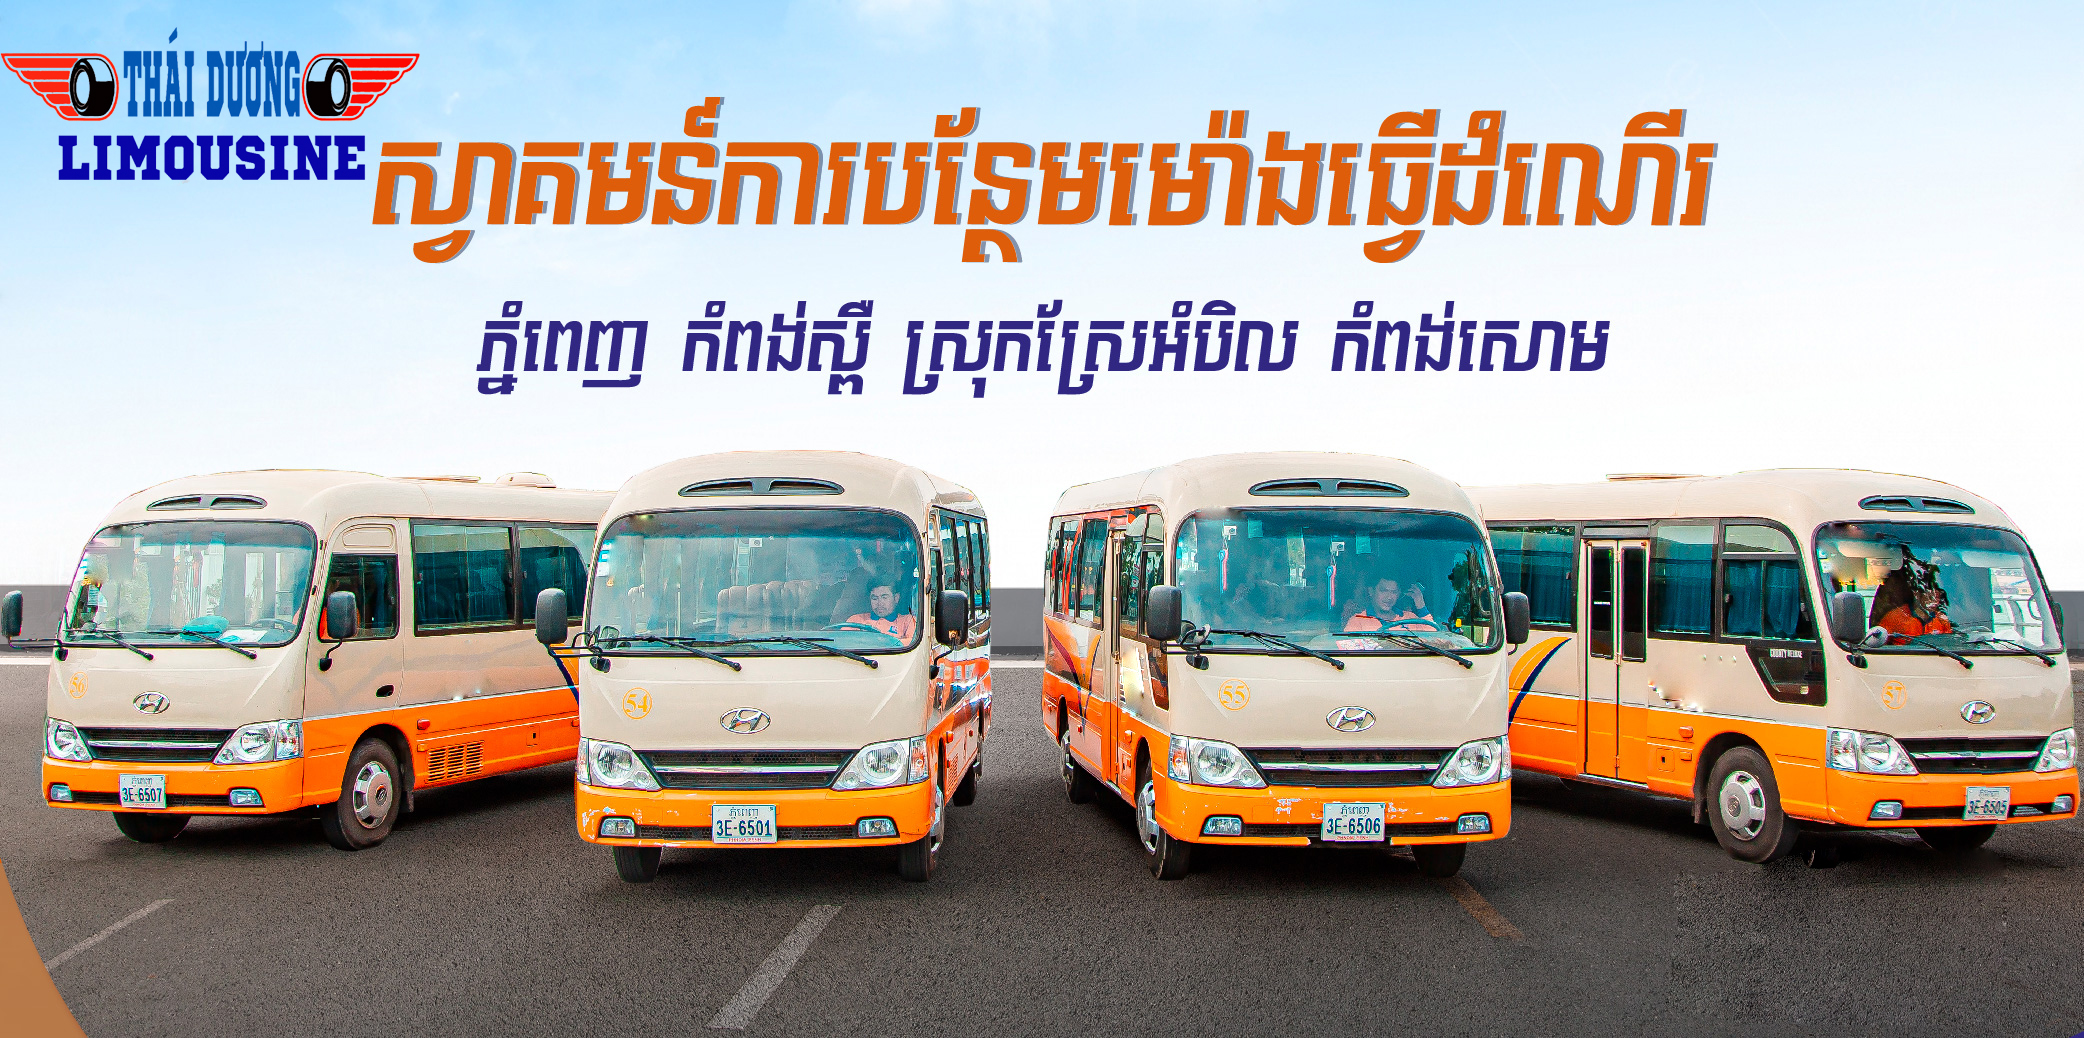 Xe từ Phnom penh đi Sihanouk Ville - Open bus từ Sài Gòn đi Campuchia